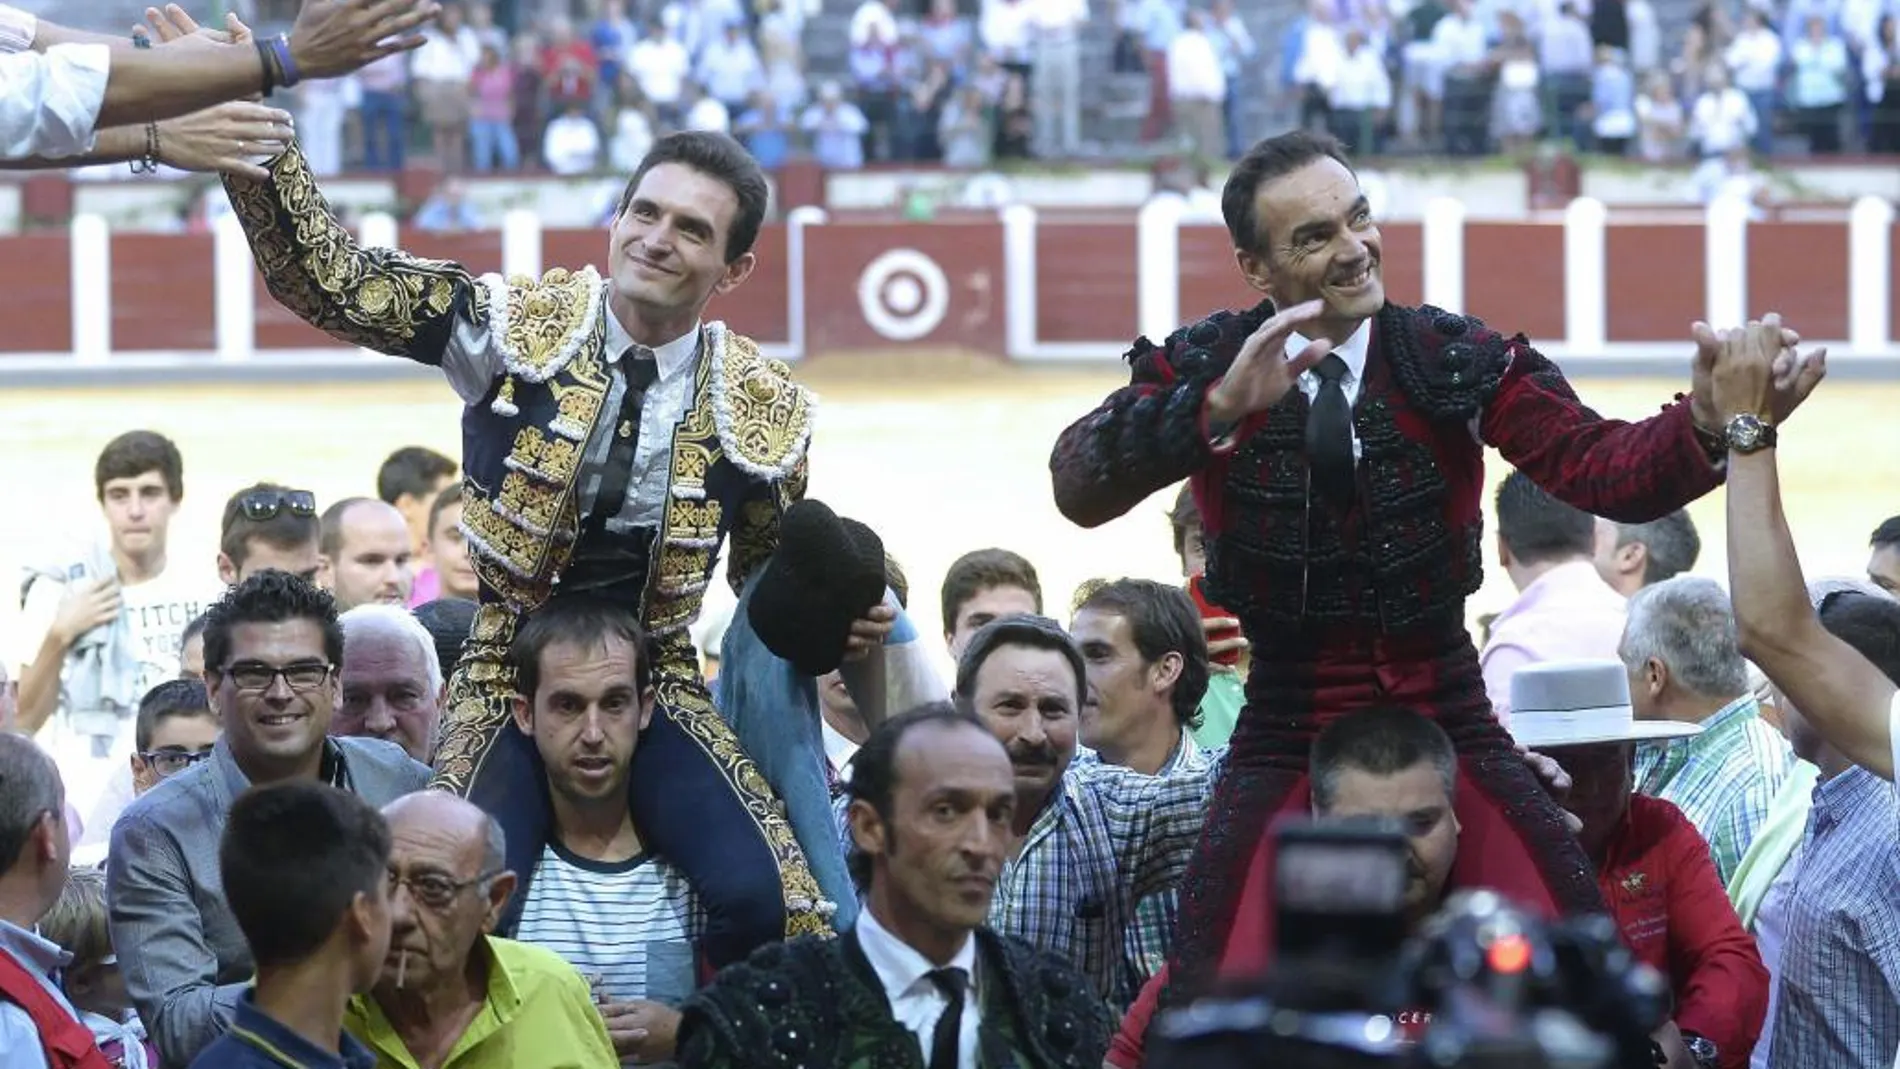 Los diestros Manuel Jess "El Cid"y José Miguel Pérez "Joselillo", salen a hombros en la cuarta corrida de la Feria de la Virgen de San Lorenzo de Valladolid